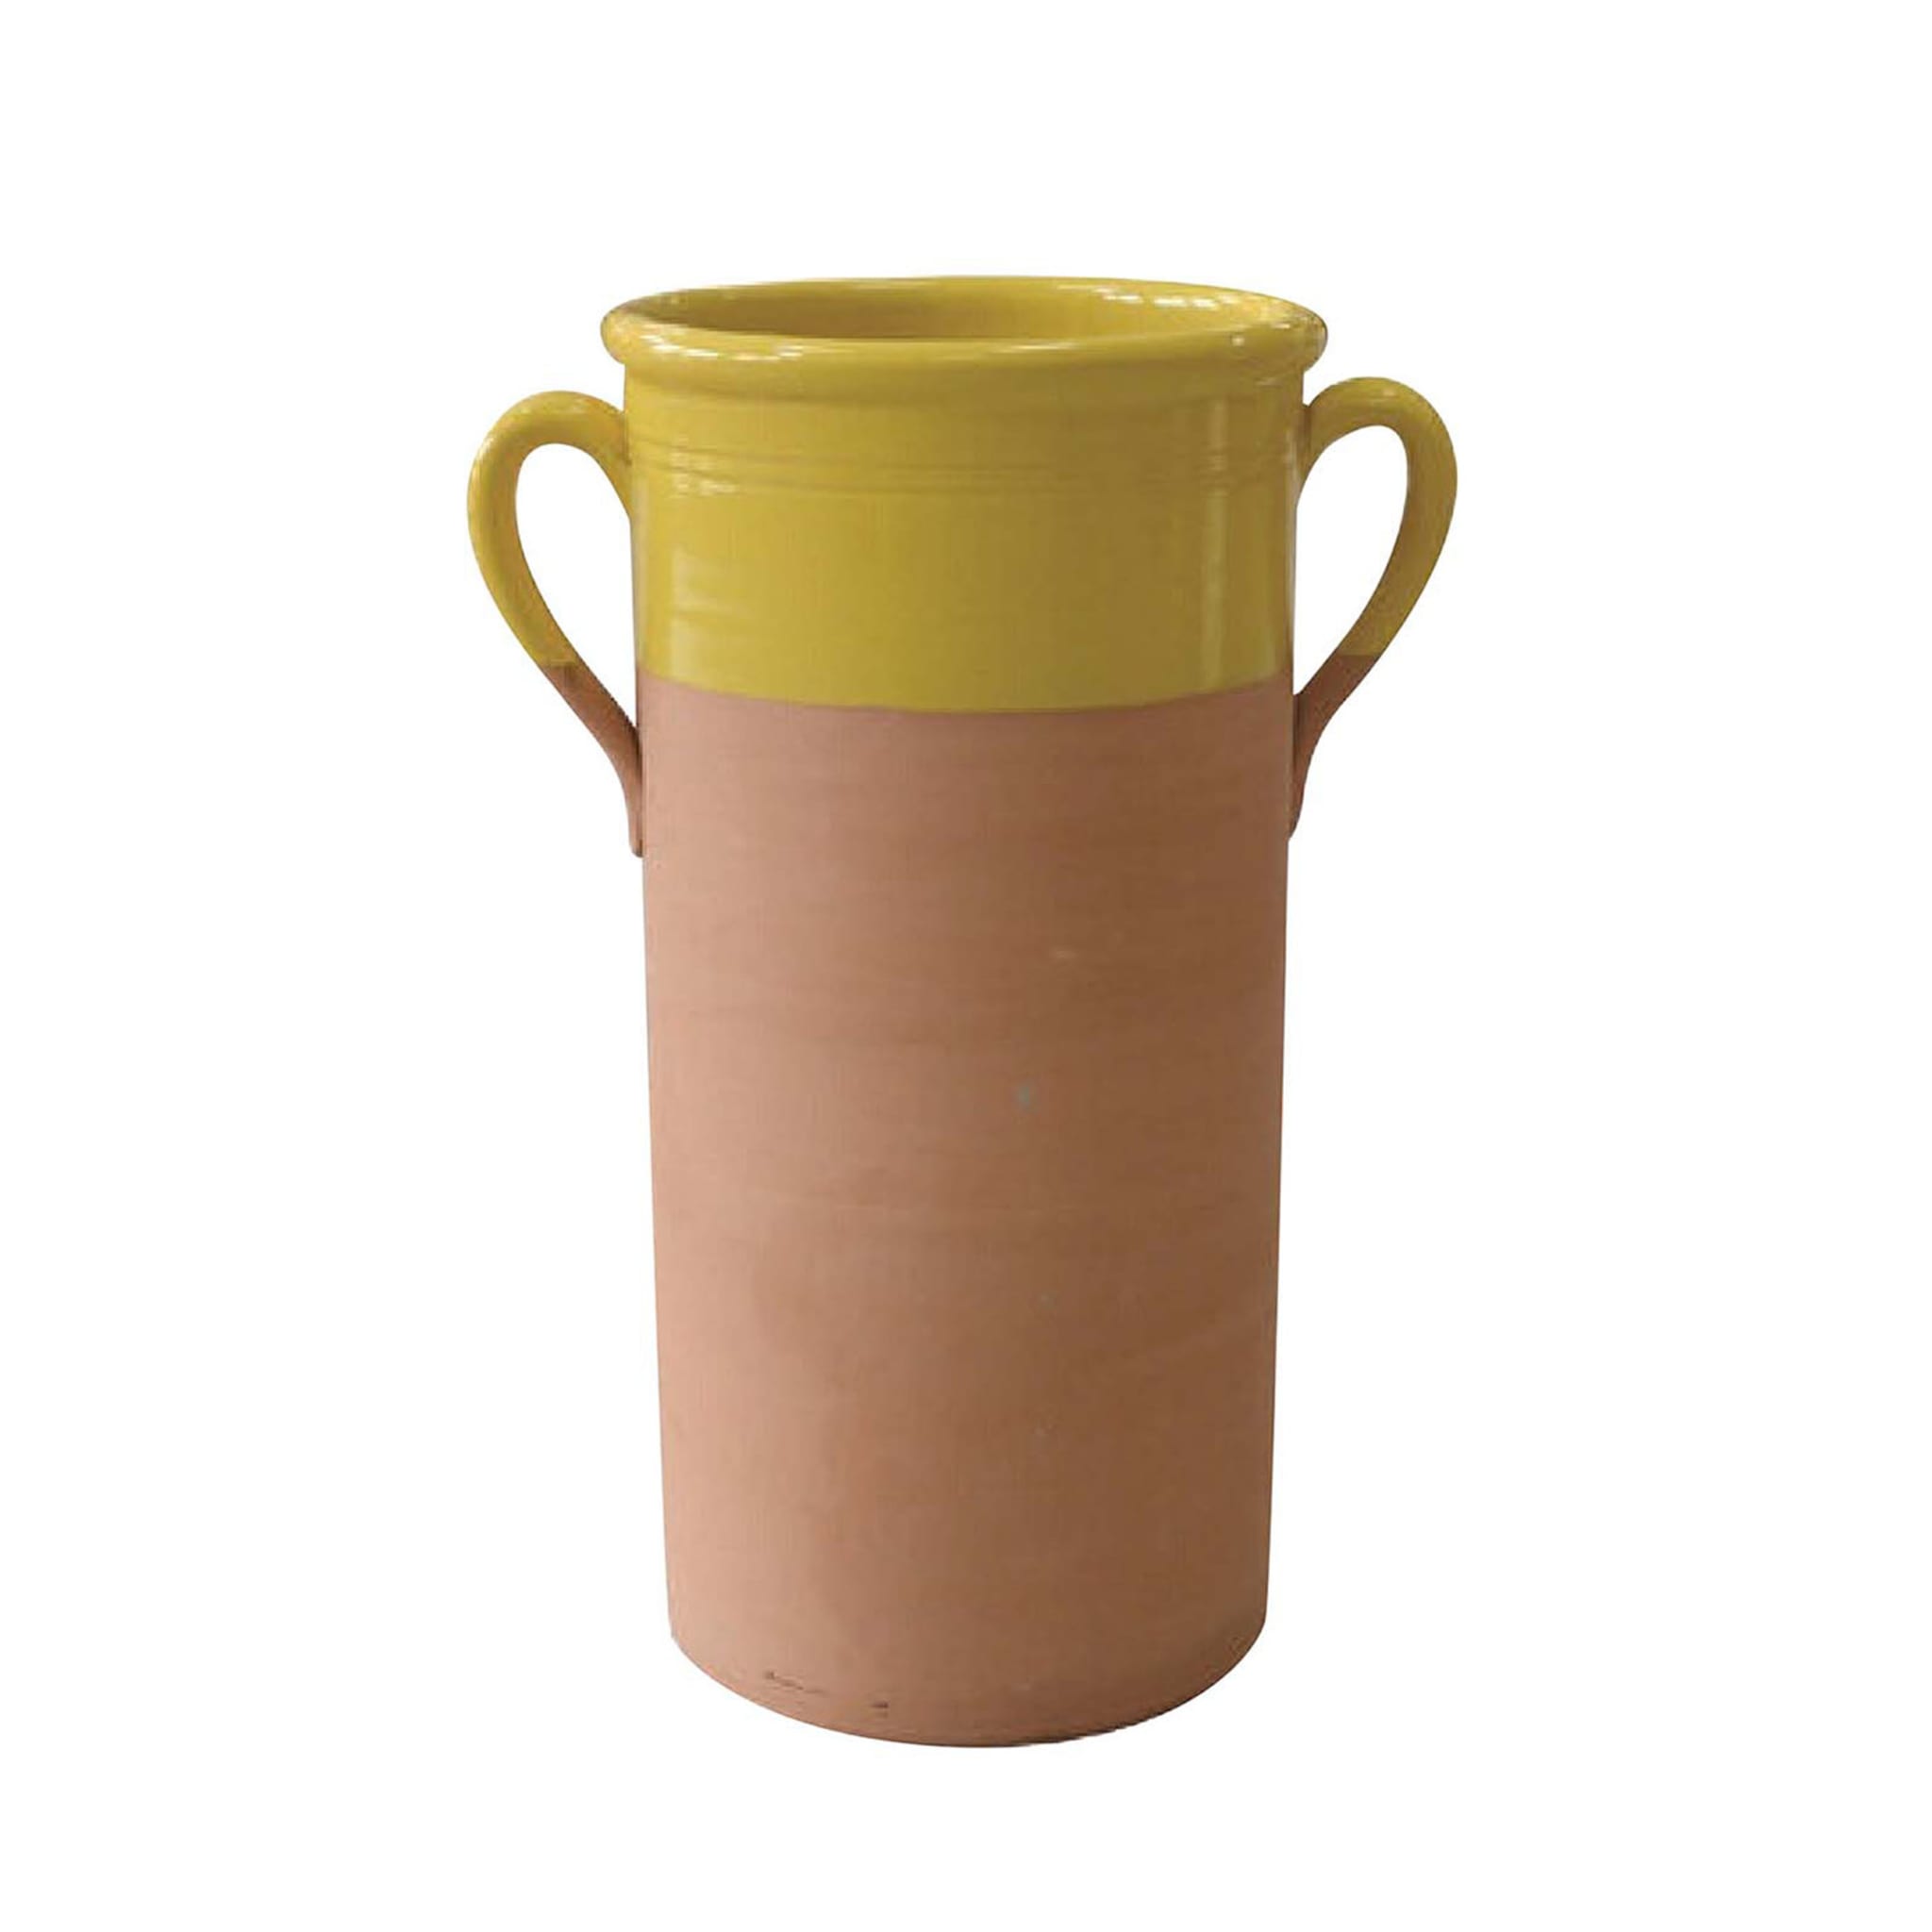 Vaso cilindrico giallo di grandi dimensioni con maniglie - Vista principale